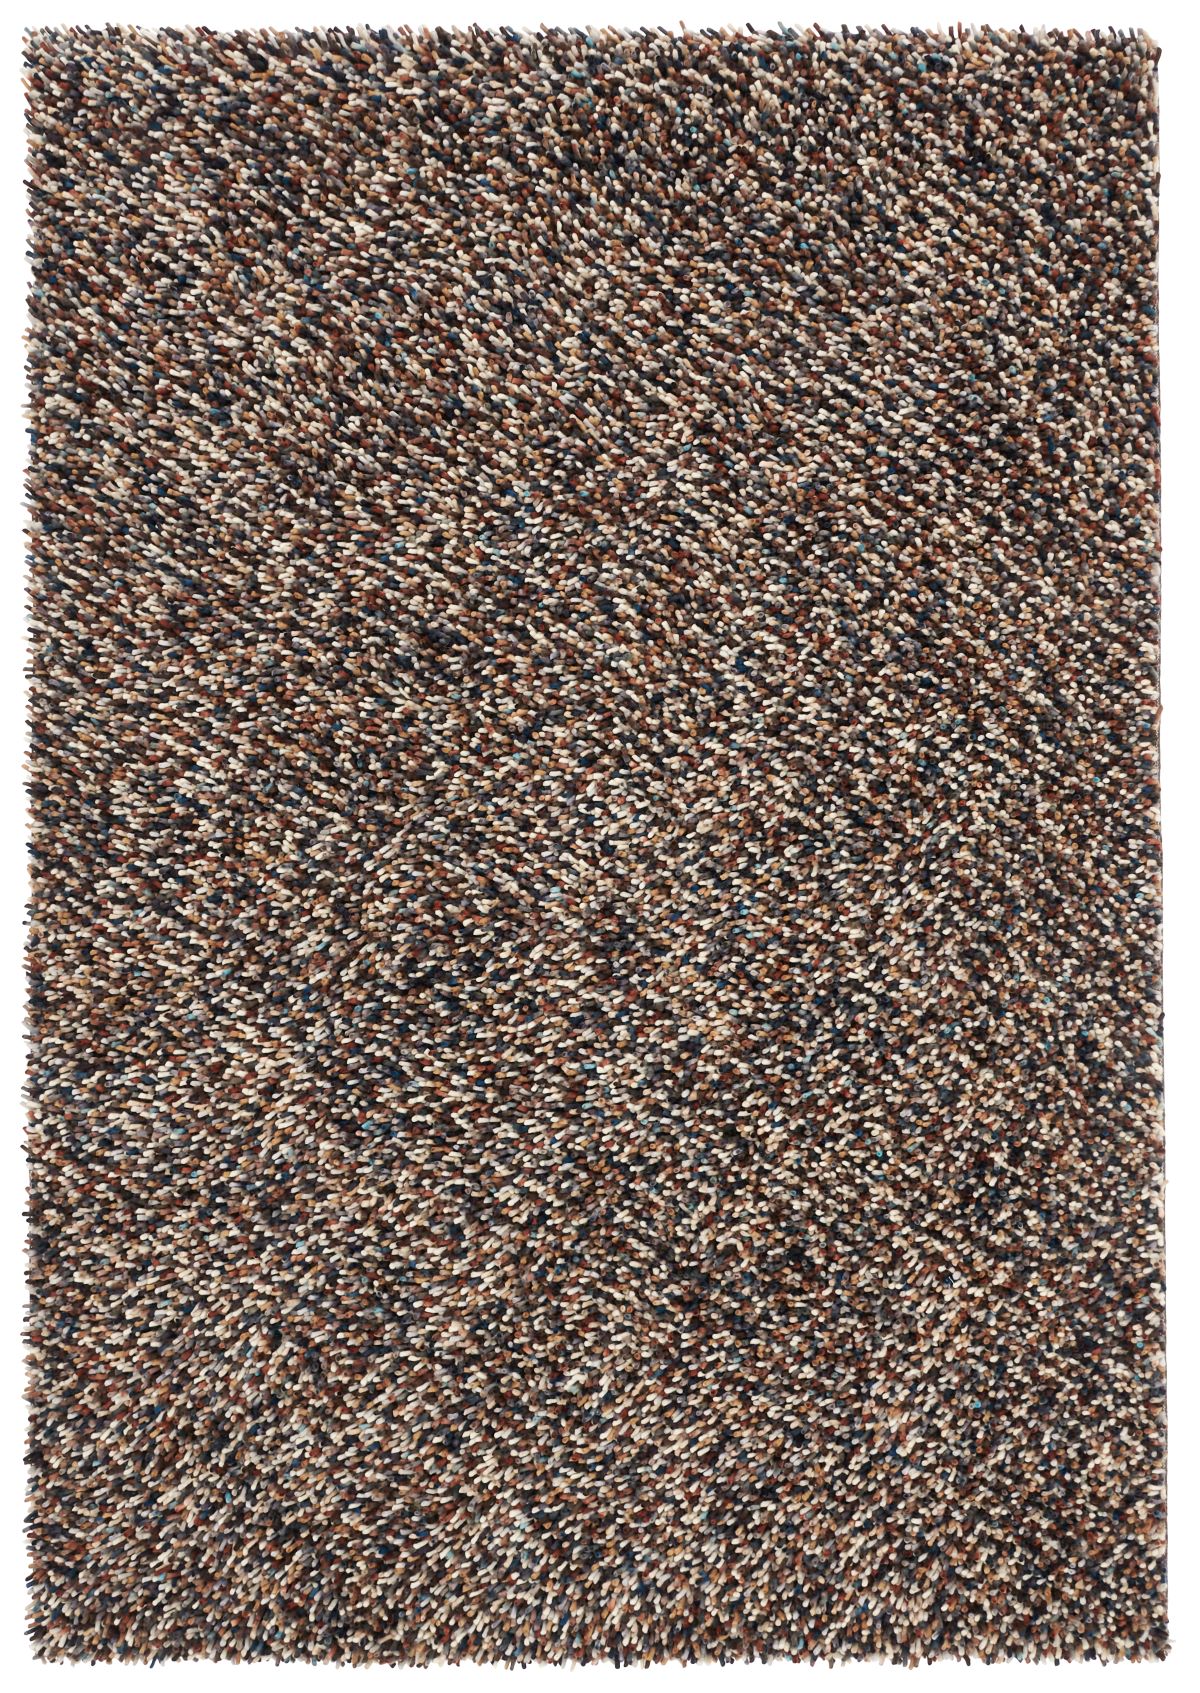 brink-and-campman-rug-dots-170405